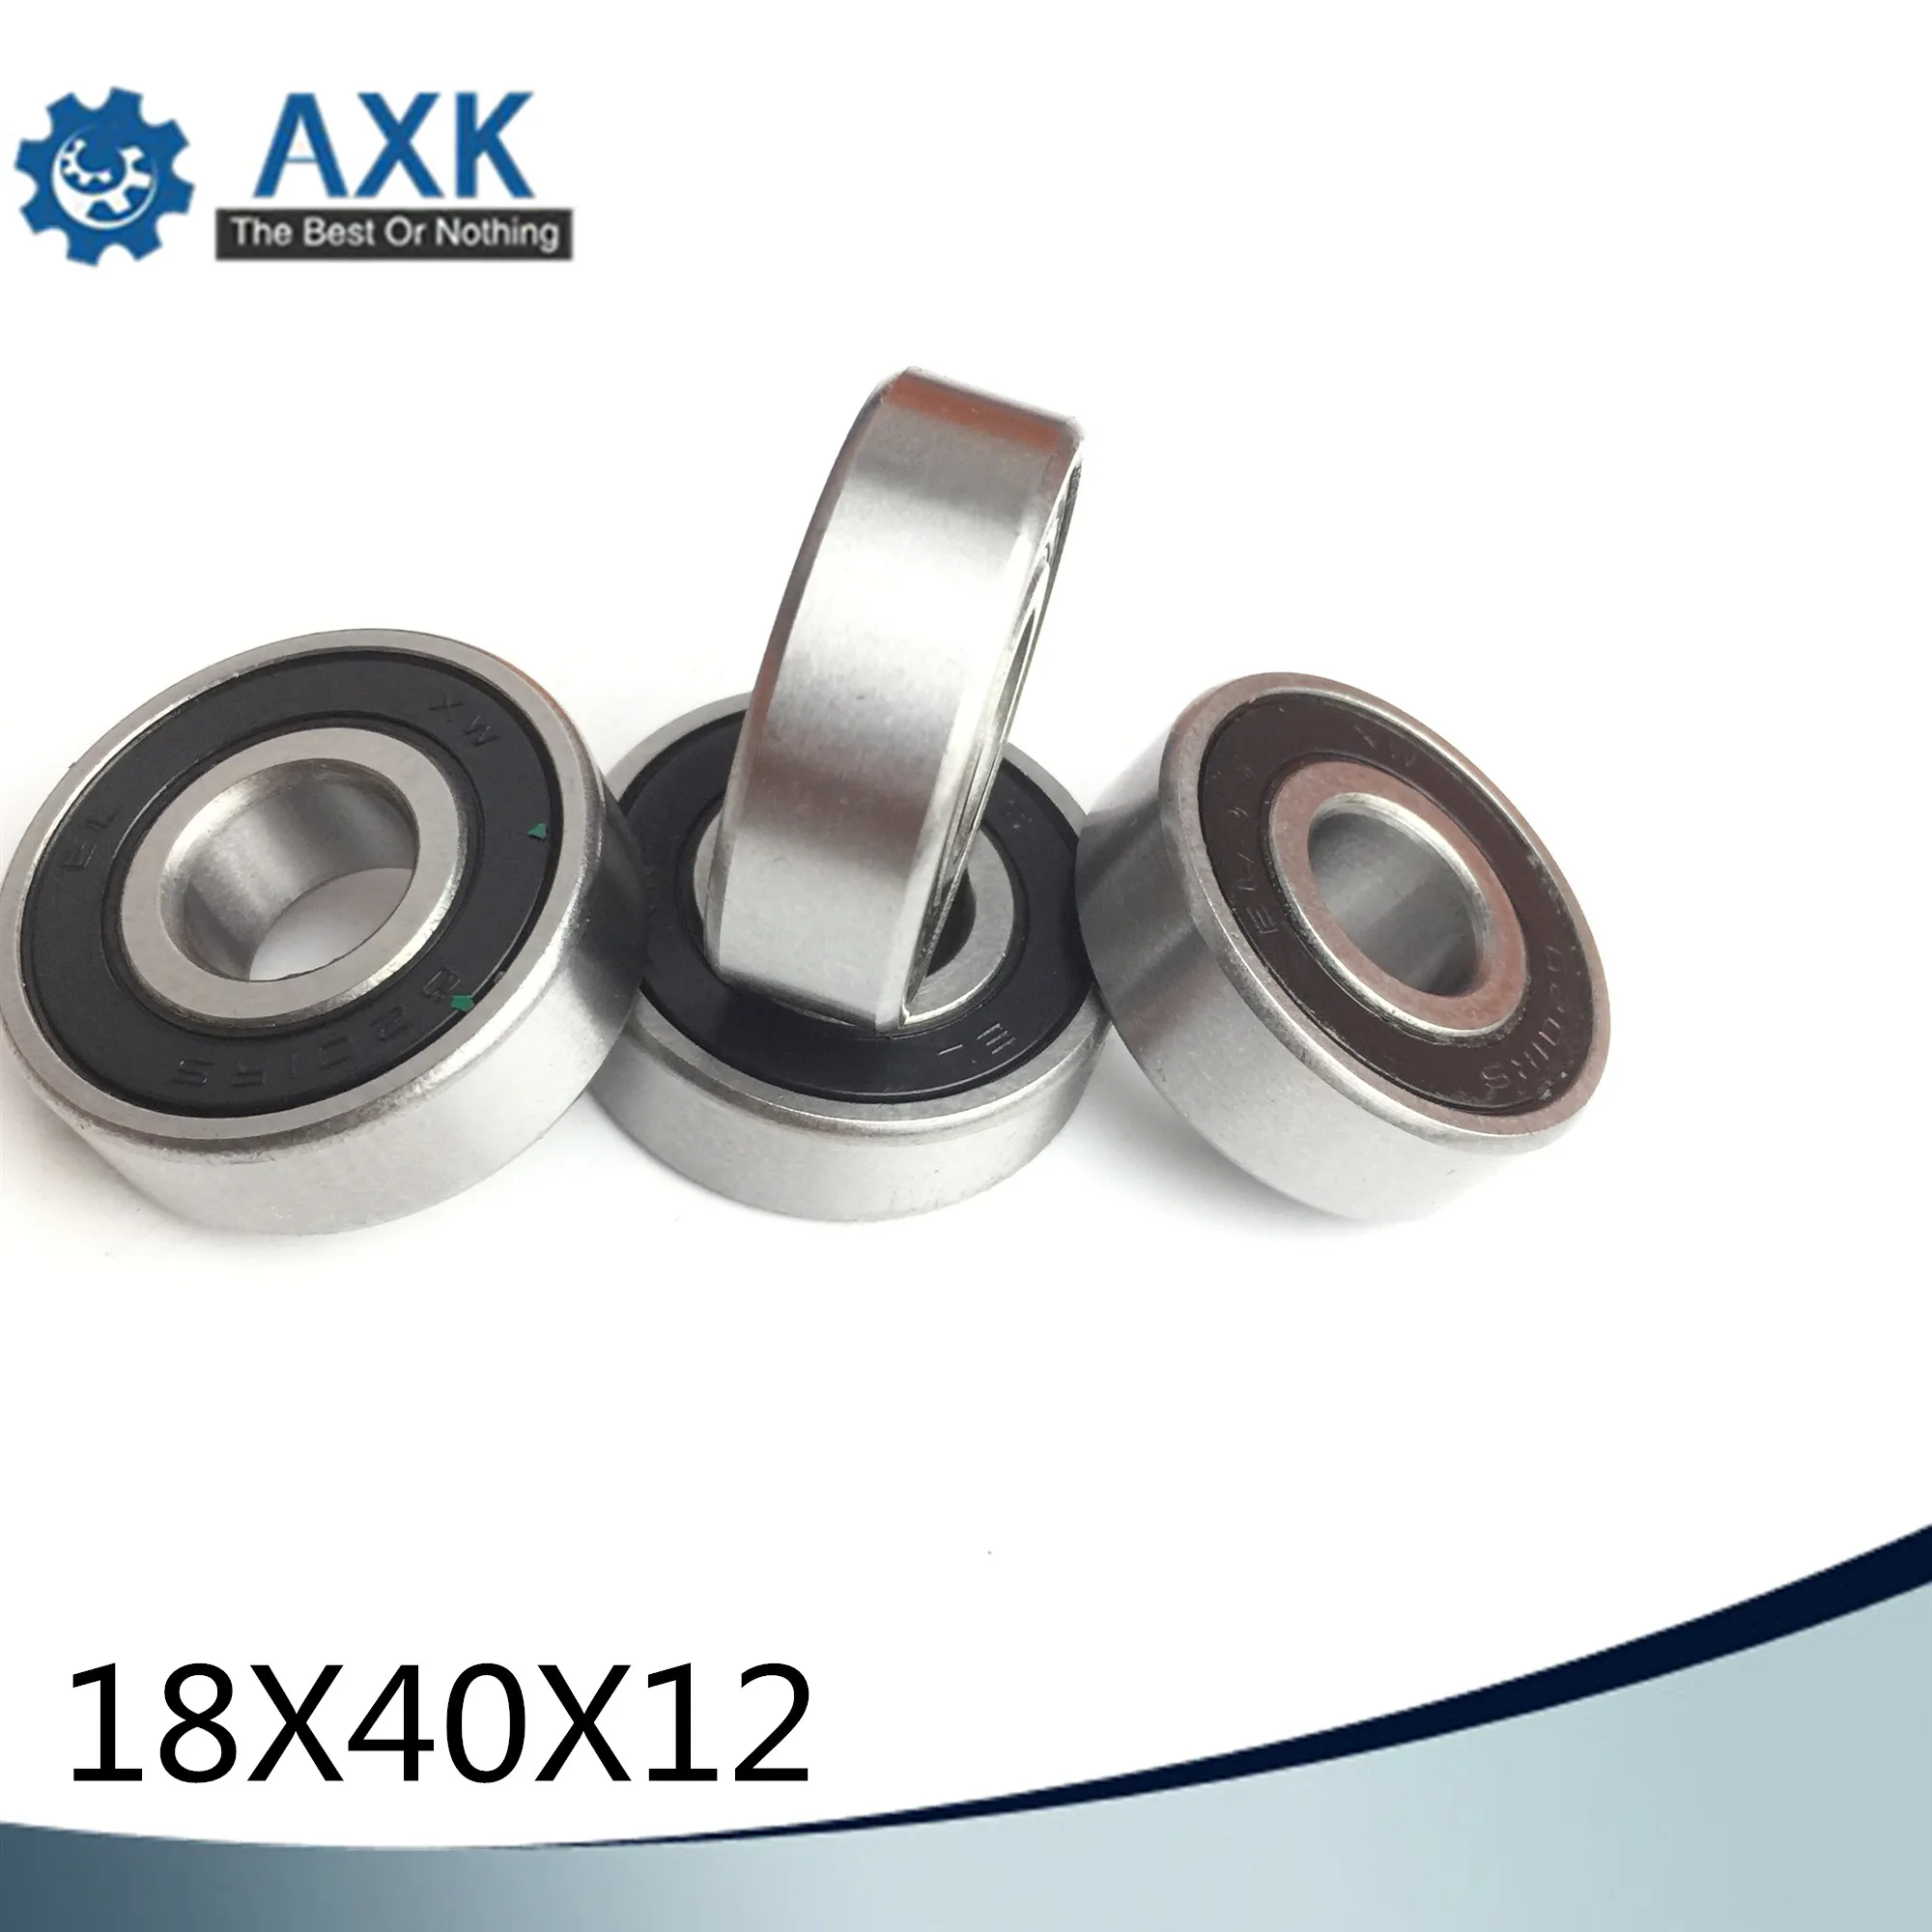 184012 Non-standard Ball Bearings ( 1 PC ) Inner Diameter 18mm Non Standard Bearing 18*40*12 mm